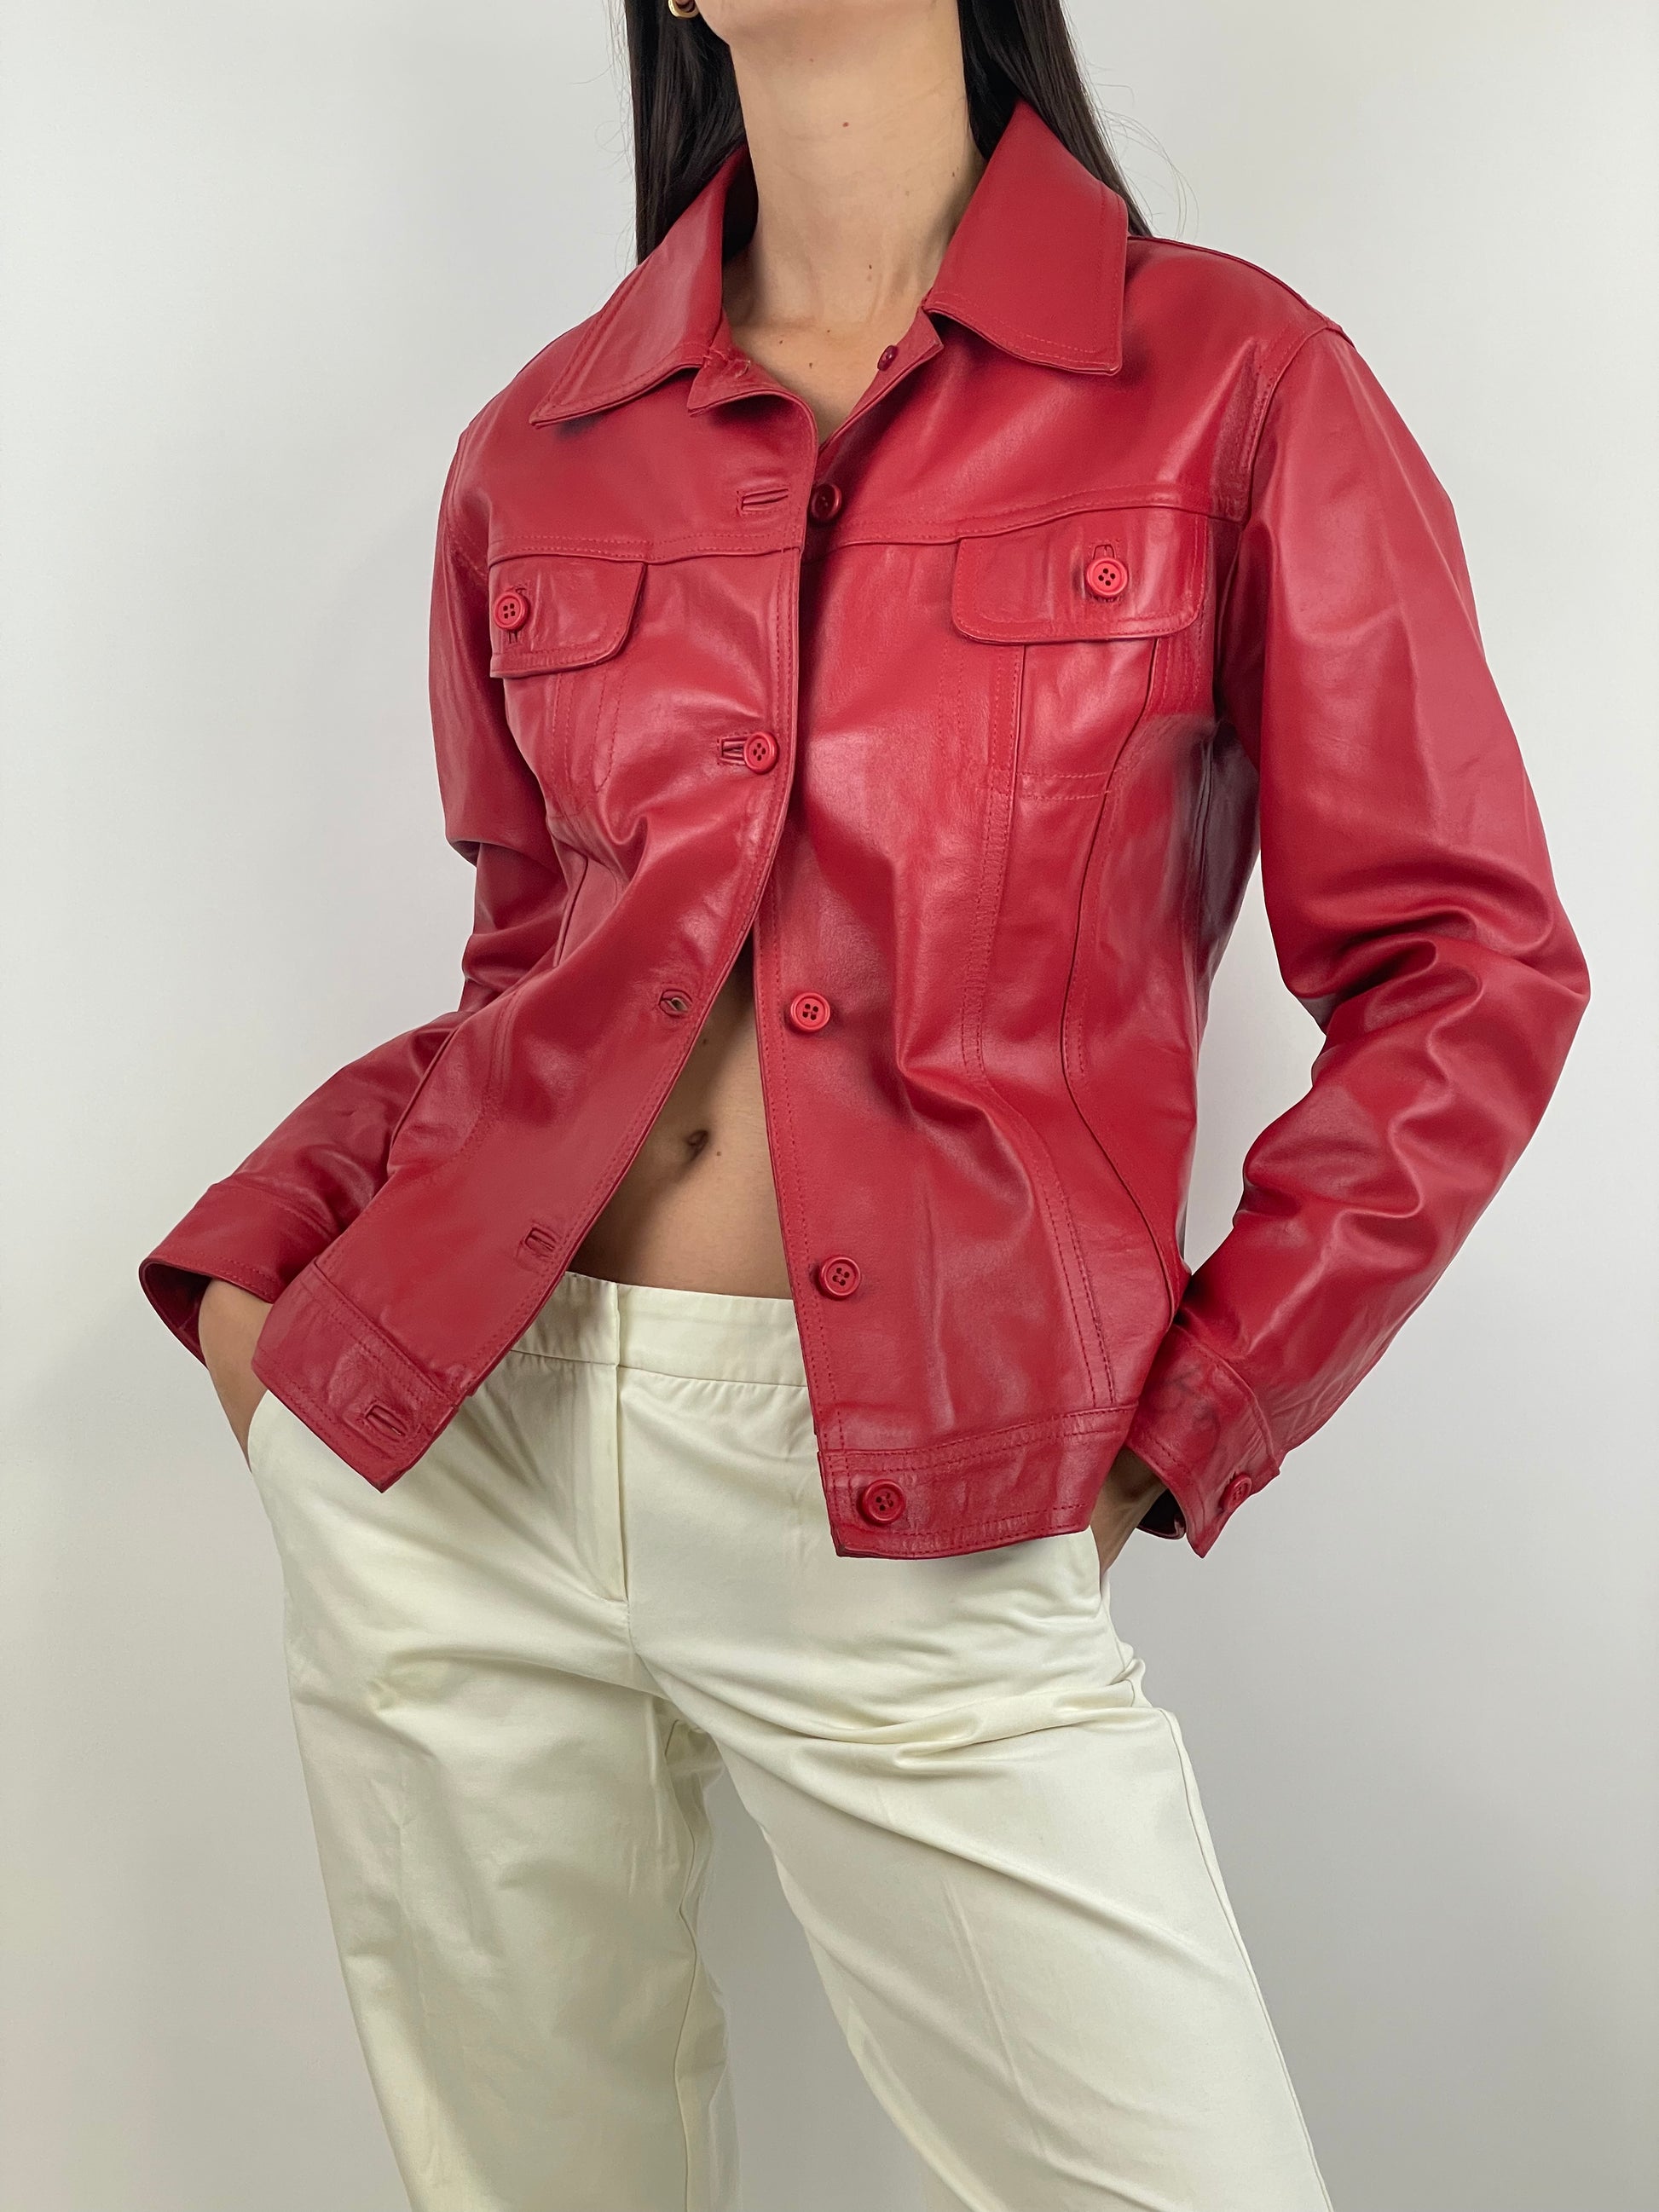 giacca-in-vera-pelle-colore-rosso-anni-80